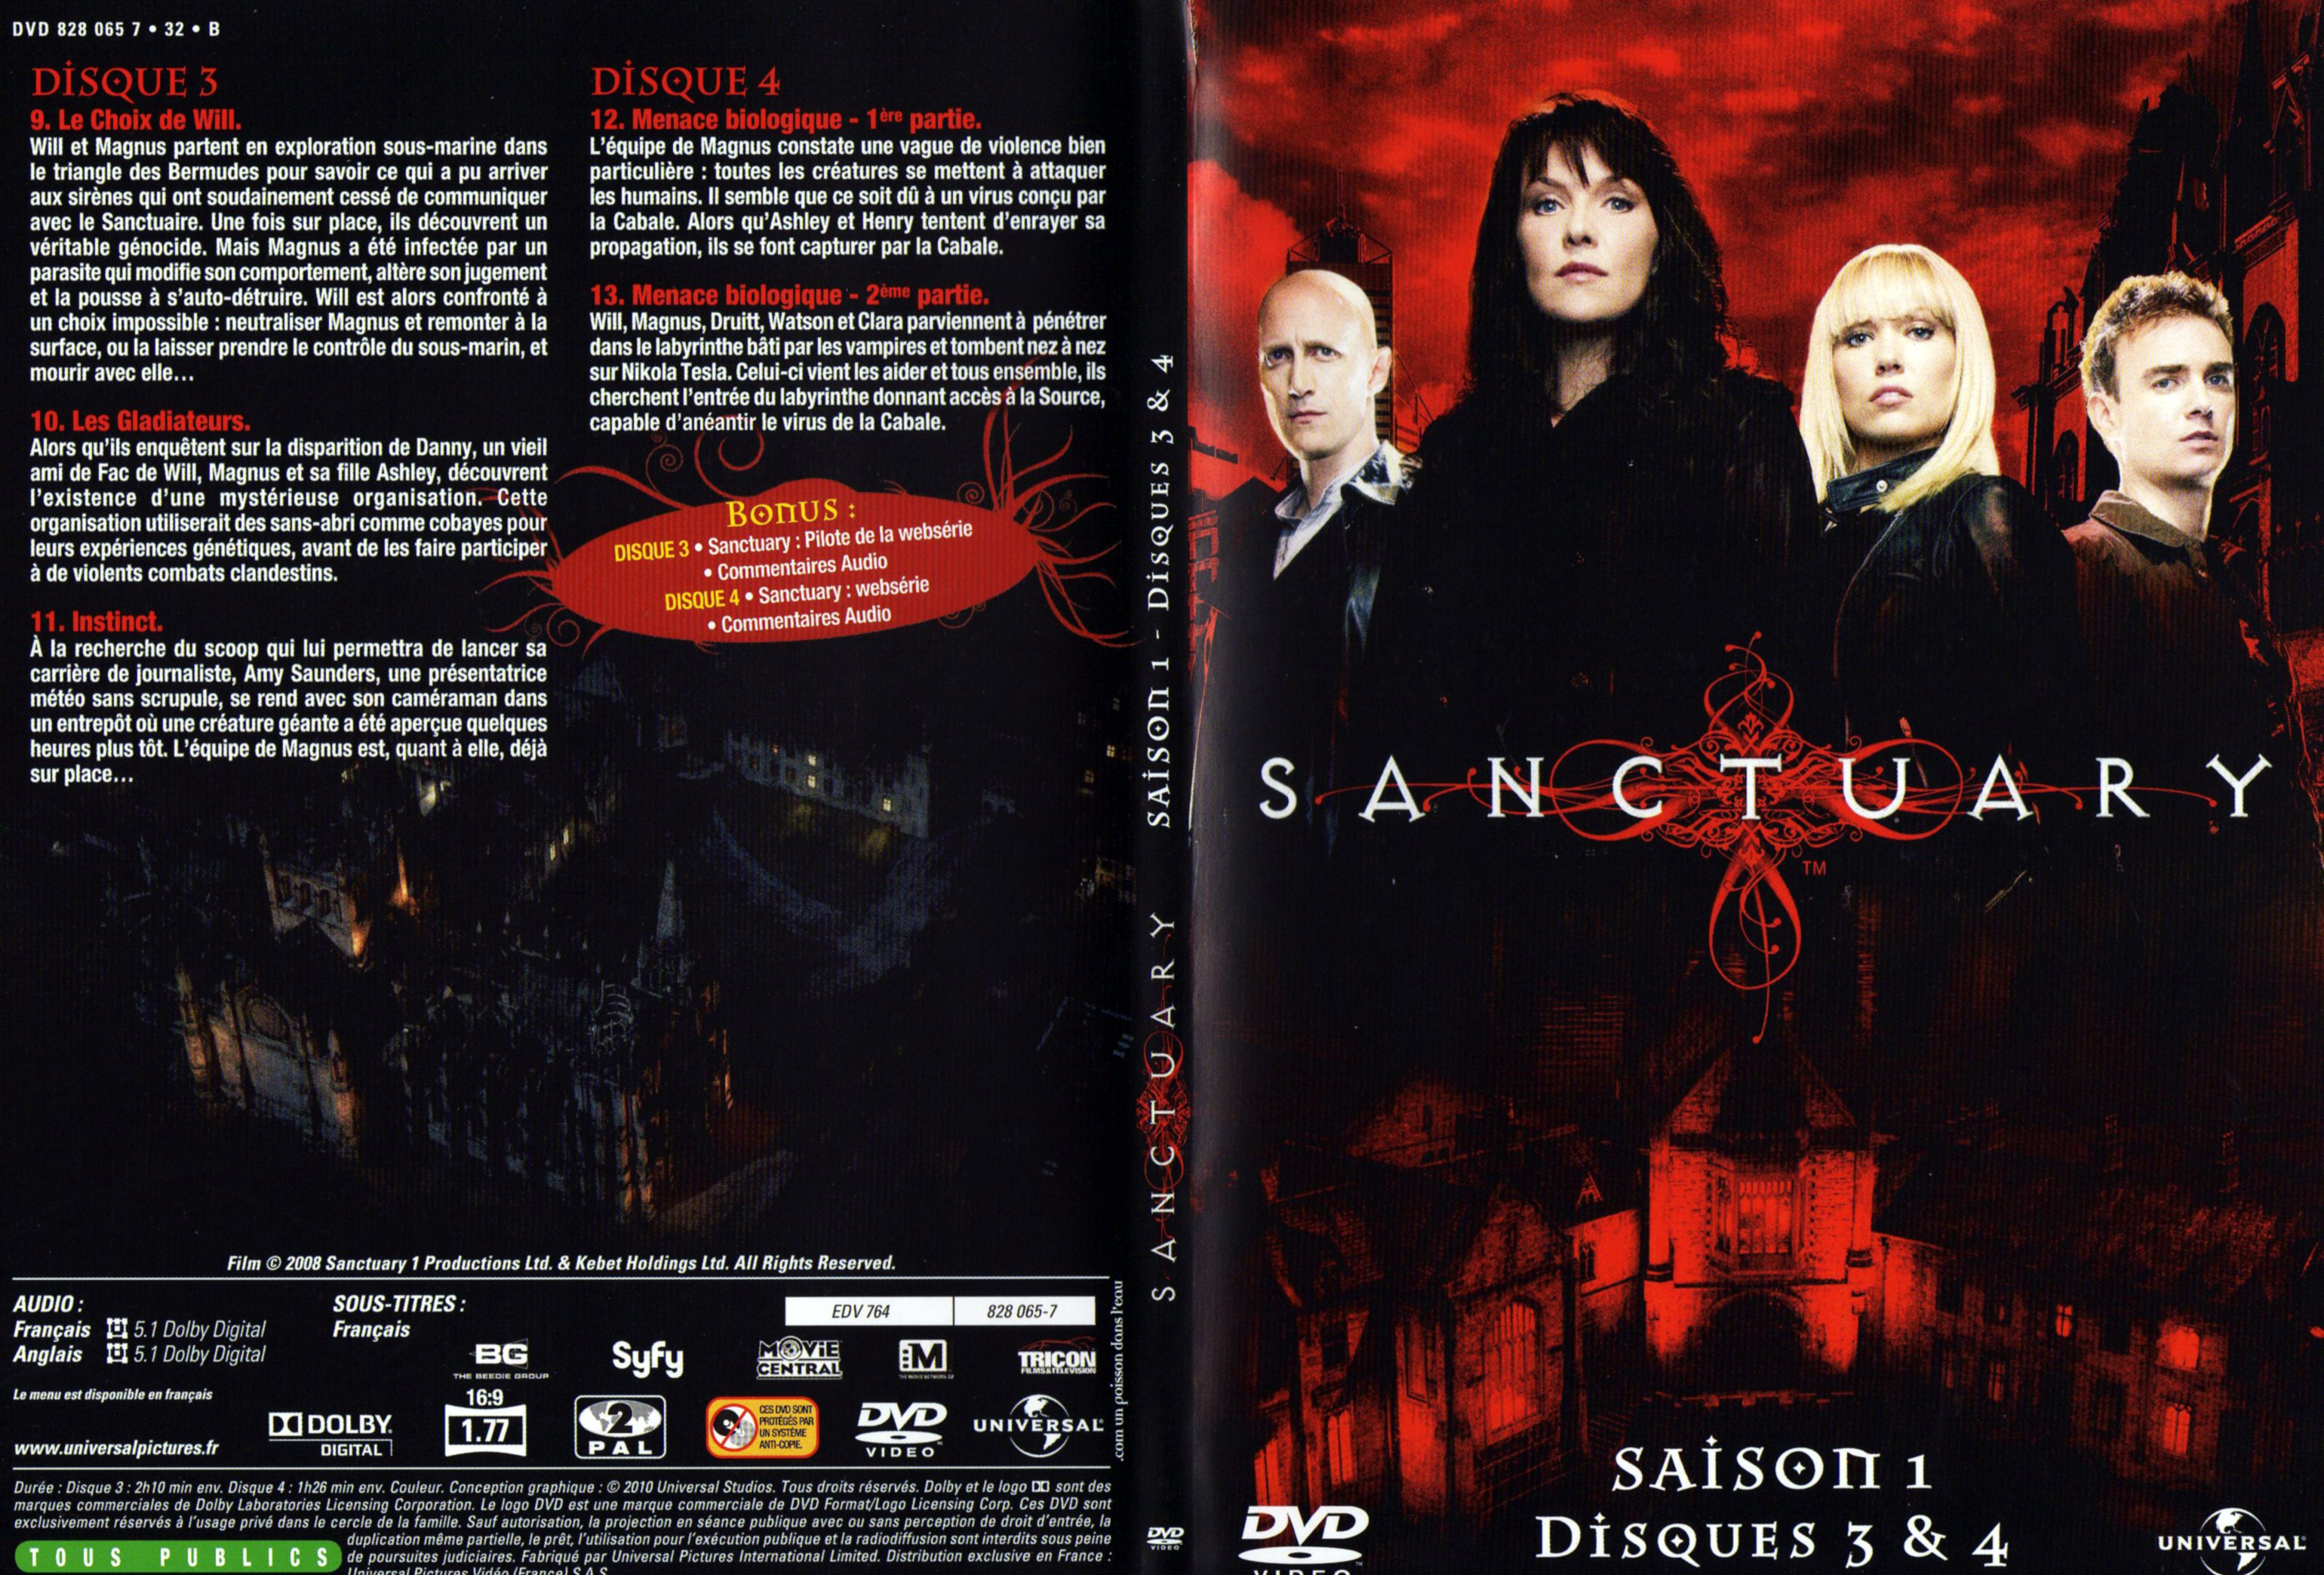 Jaquette DVD Sanctuary Saison 1 DVD 2